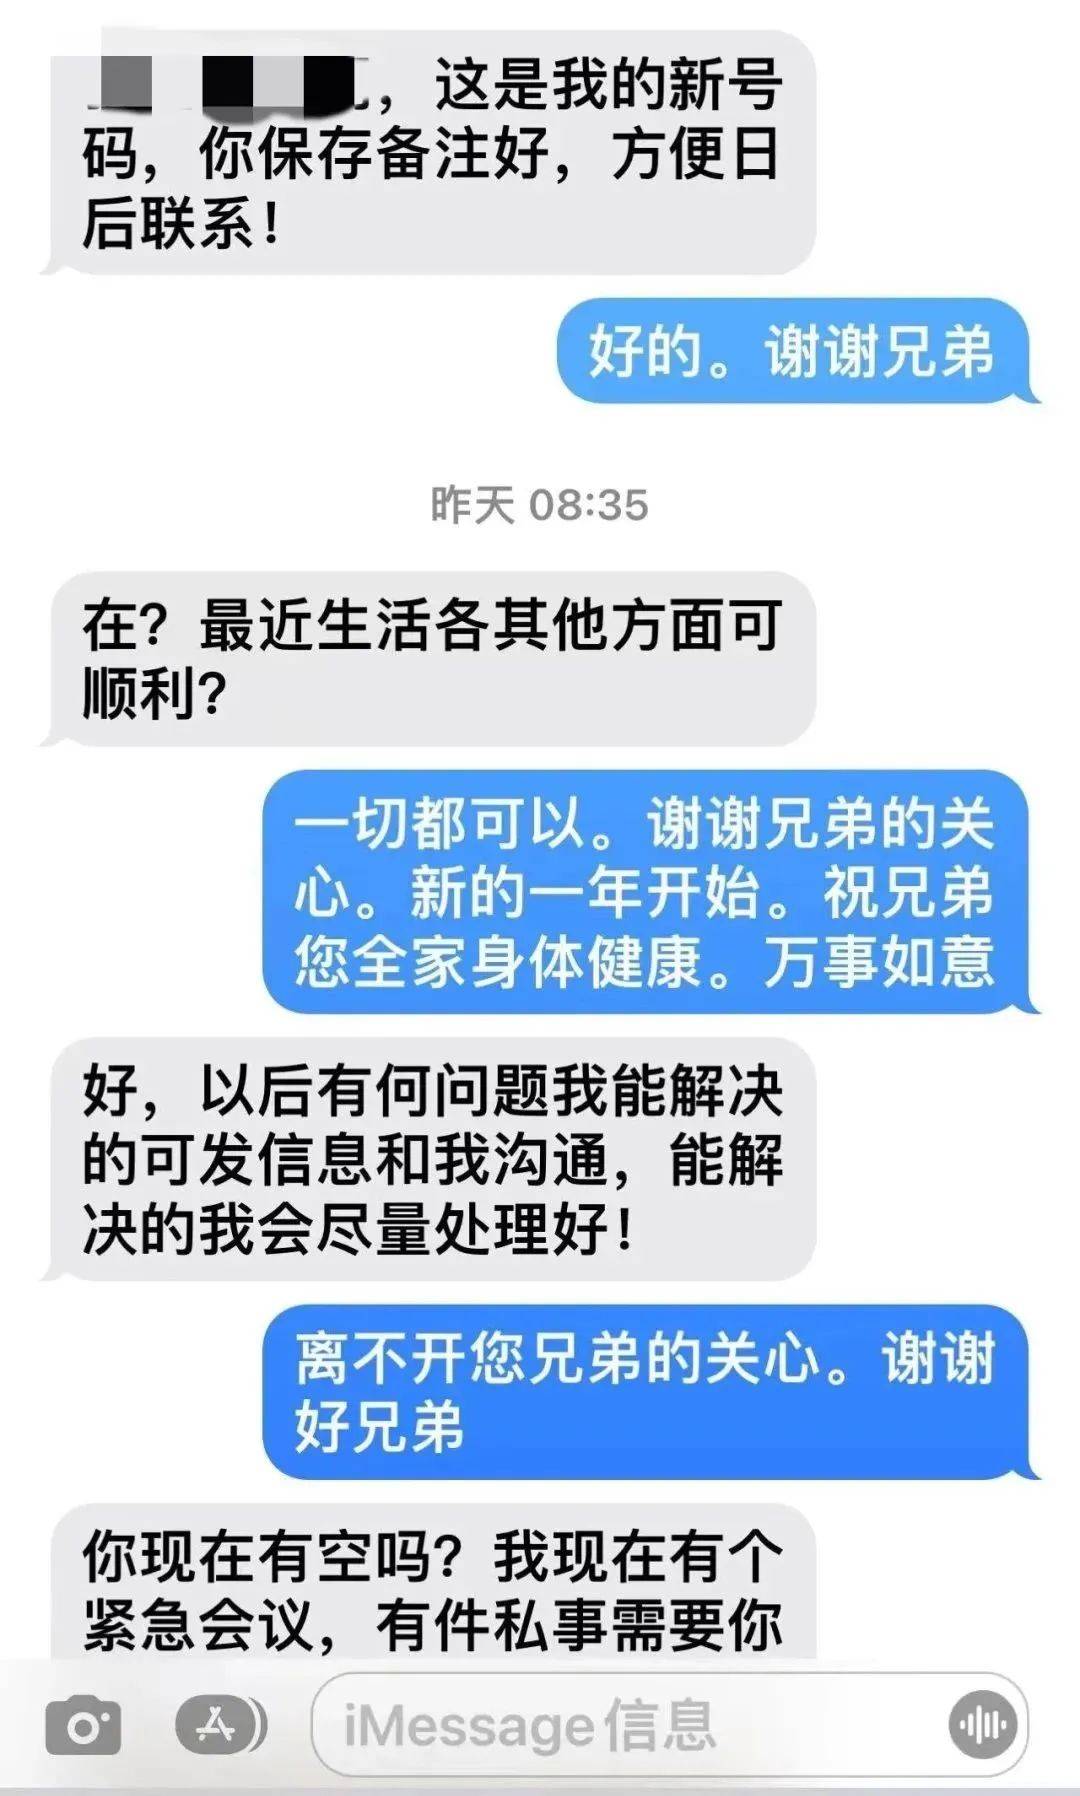 今年2月,上海的李先生突然收到一条imessage短信,对方自称是其老友赵